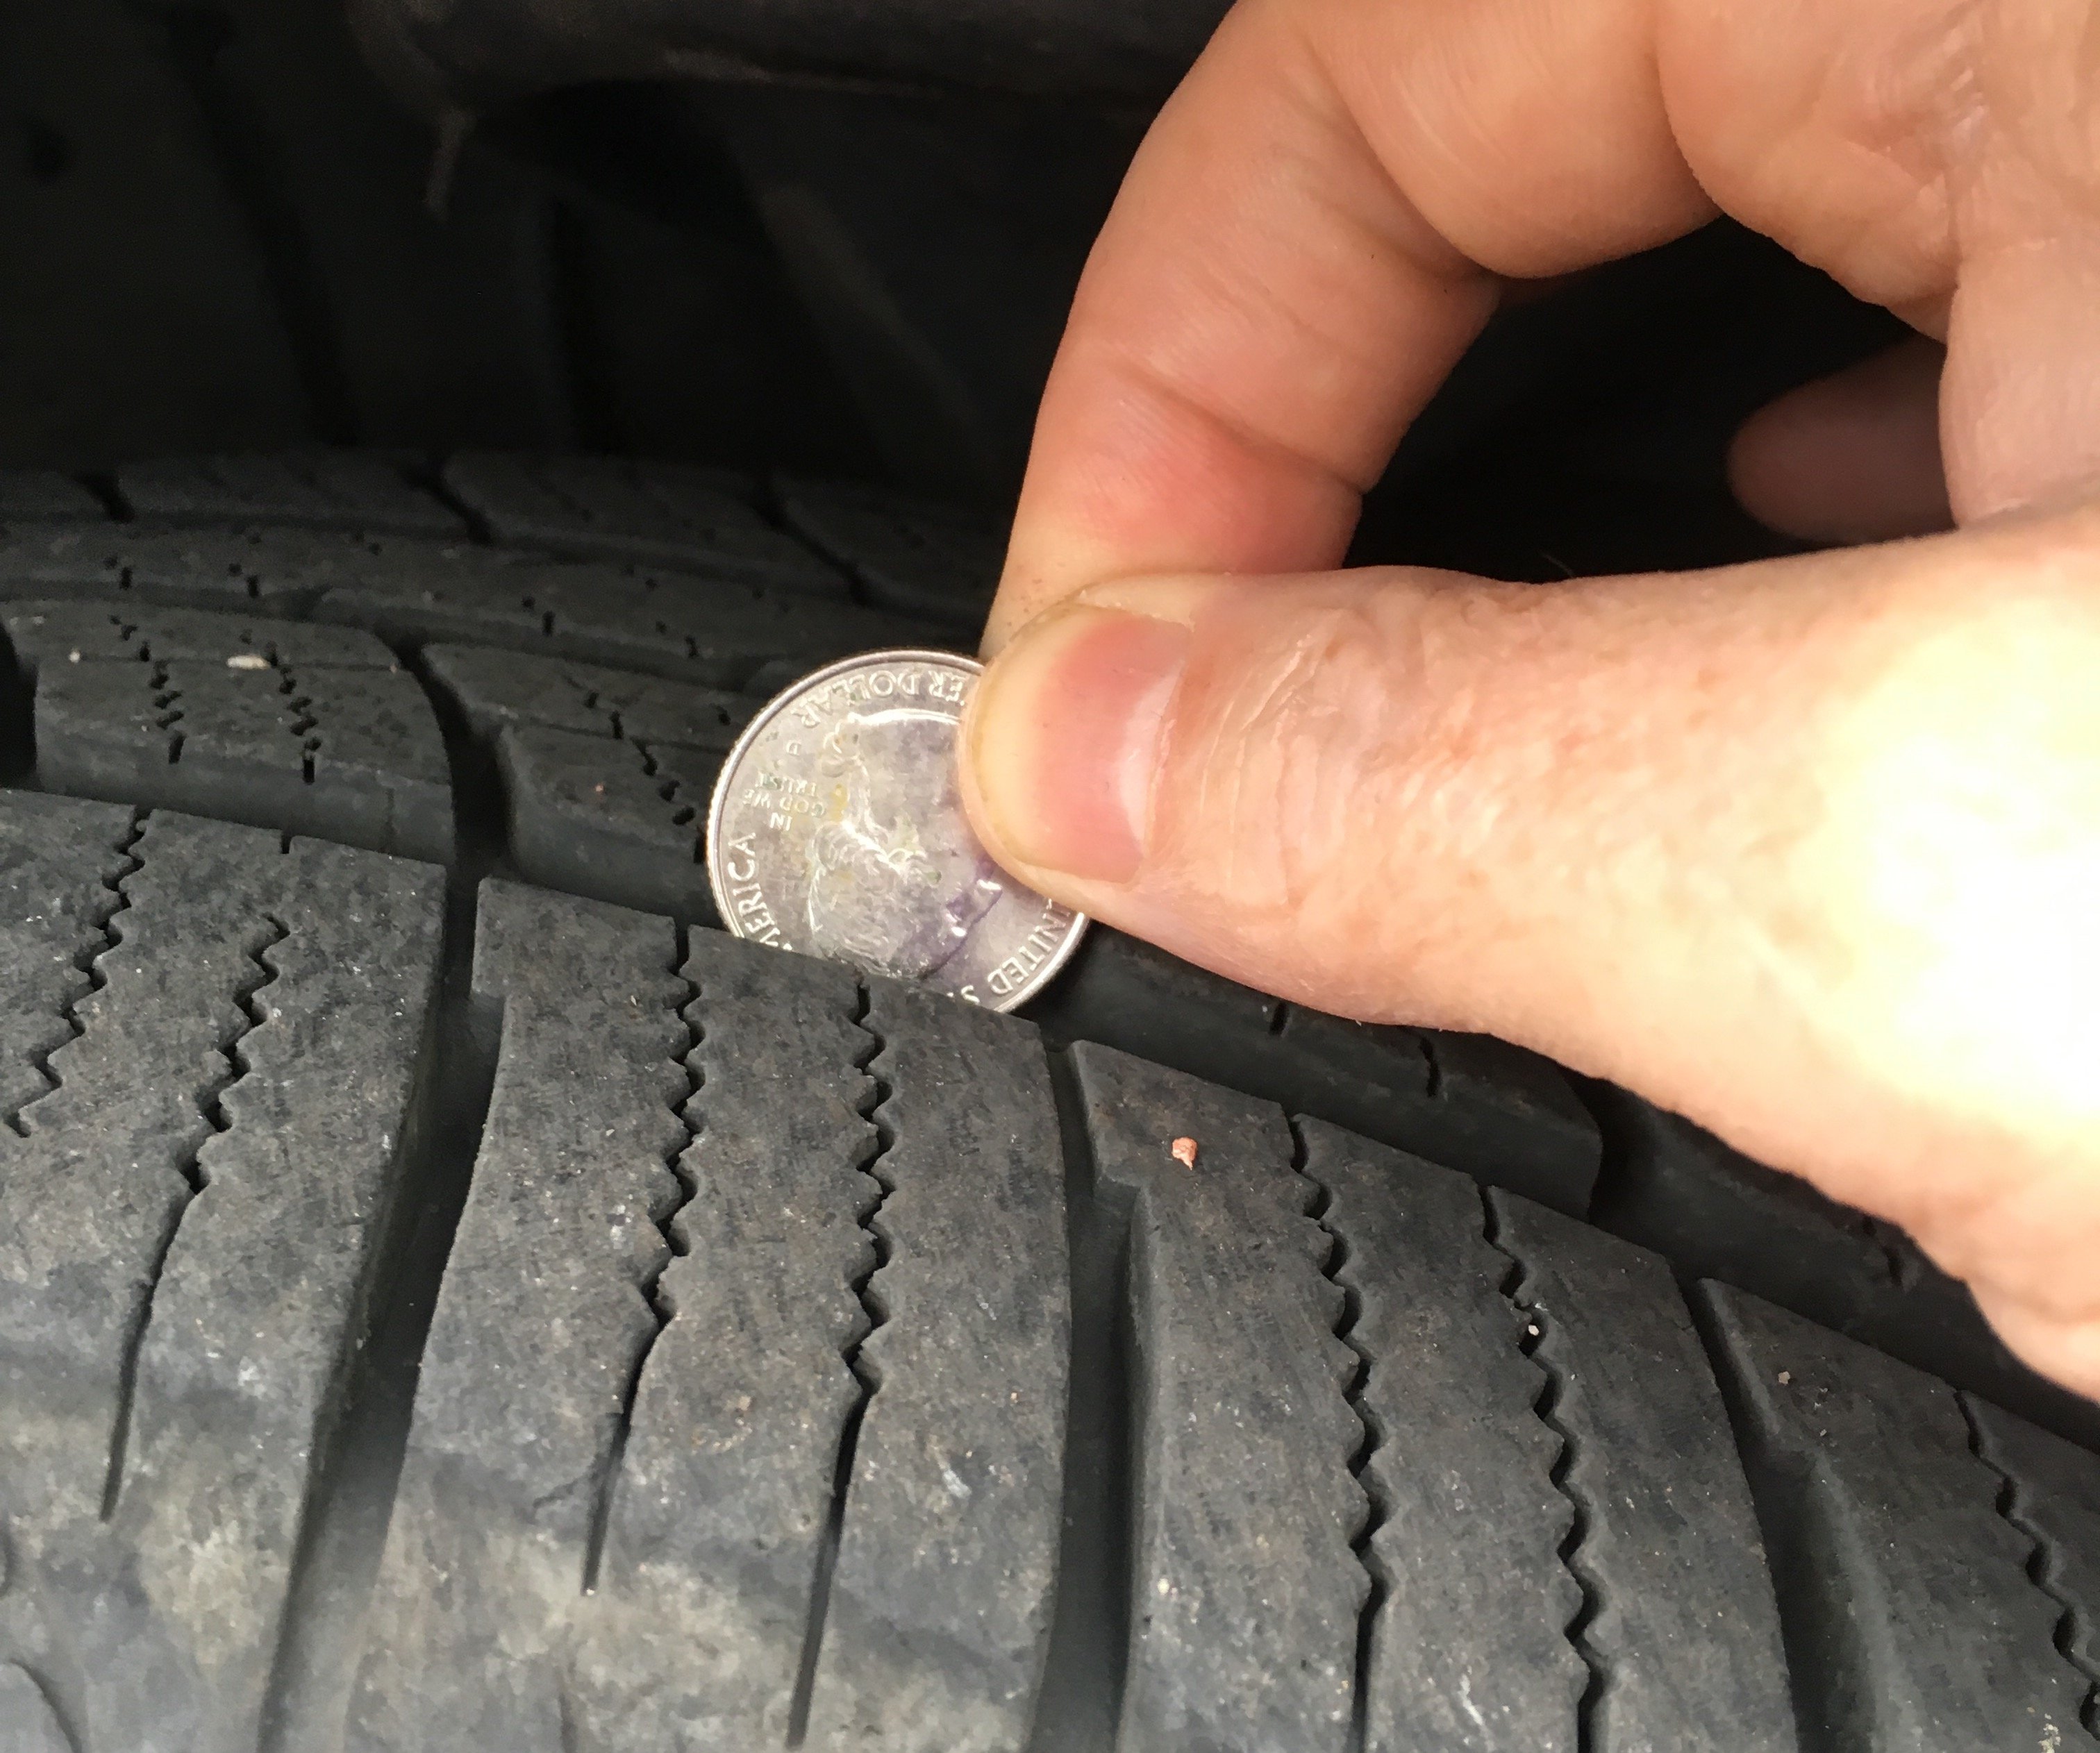 quarter test, checking tires 